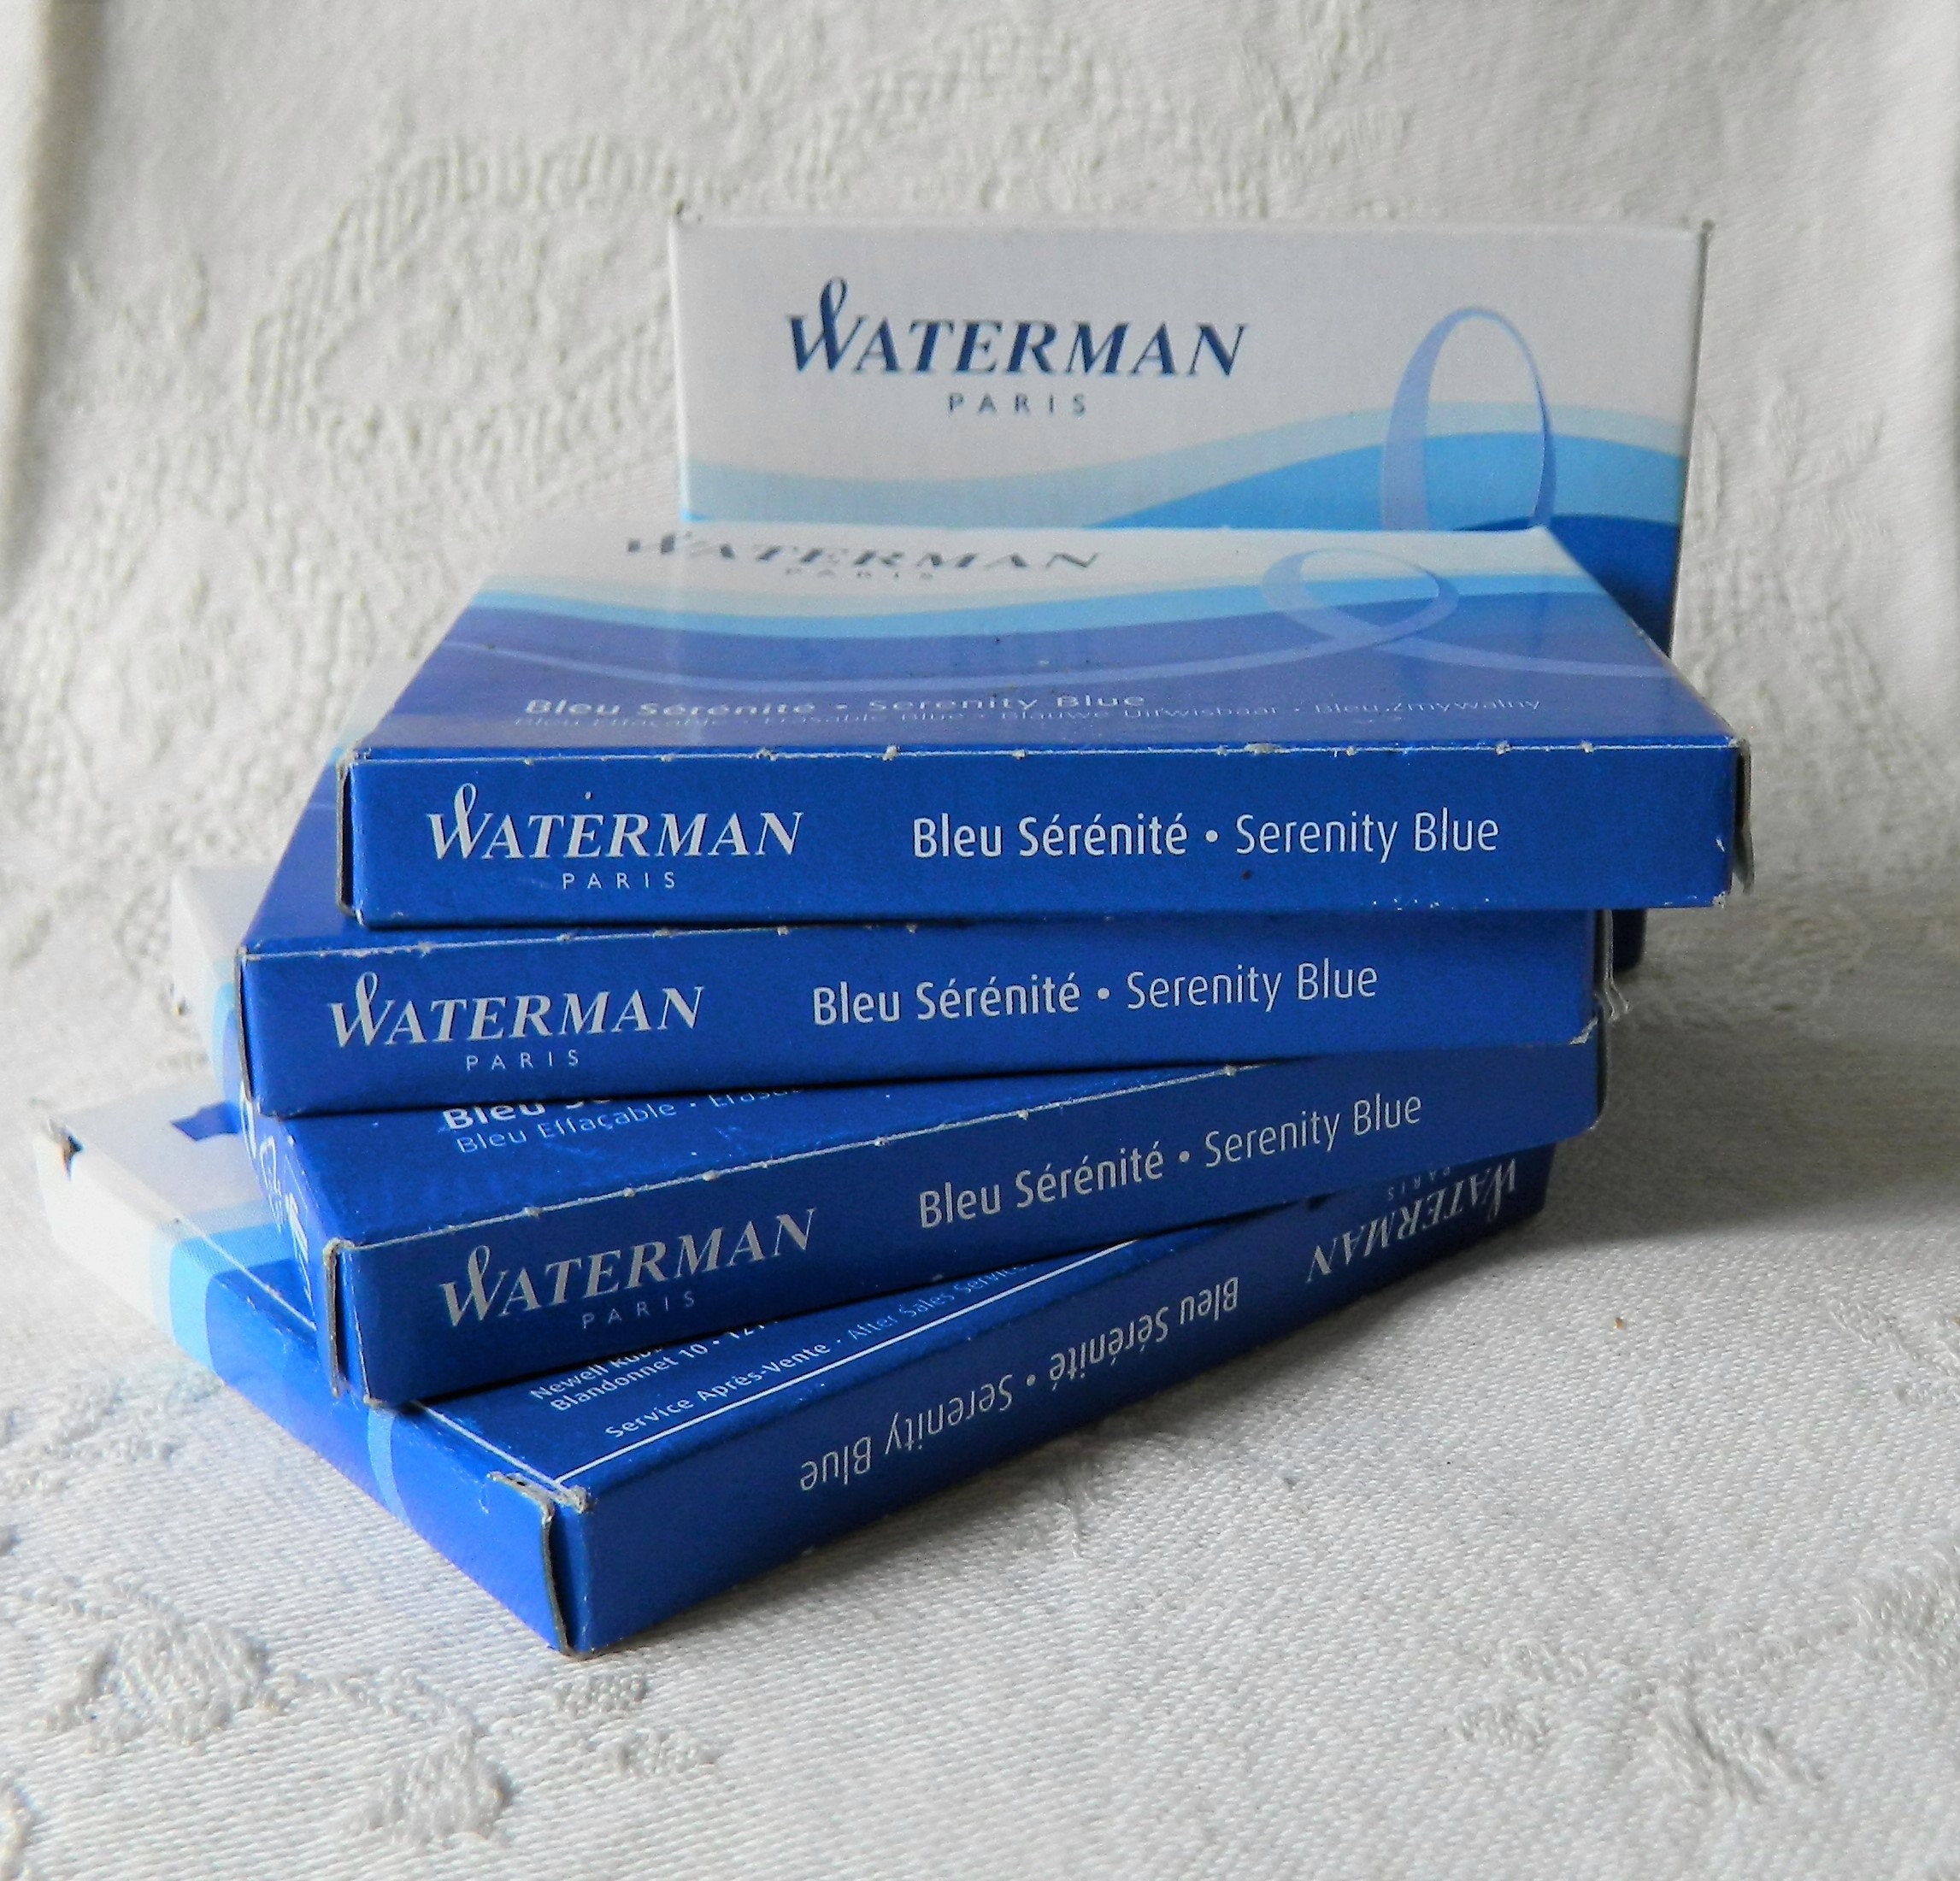 WATERMAN boîte de 8 cartouches longues, encre Bleu Sérénité effaçable pour  Stylo plume